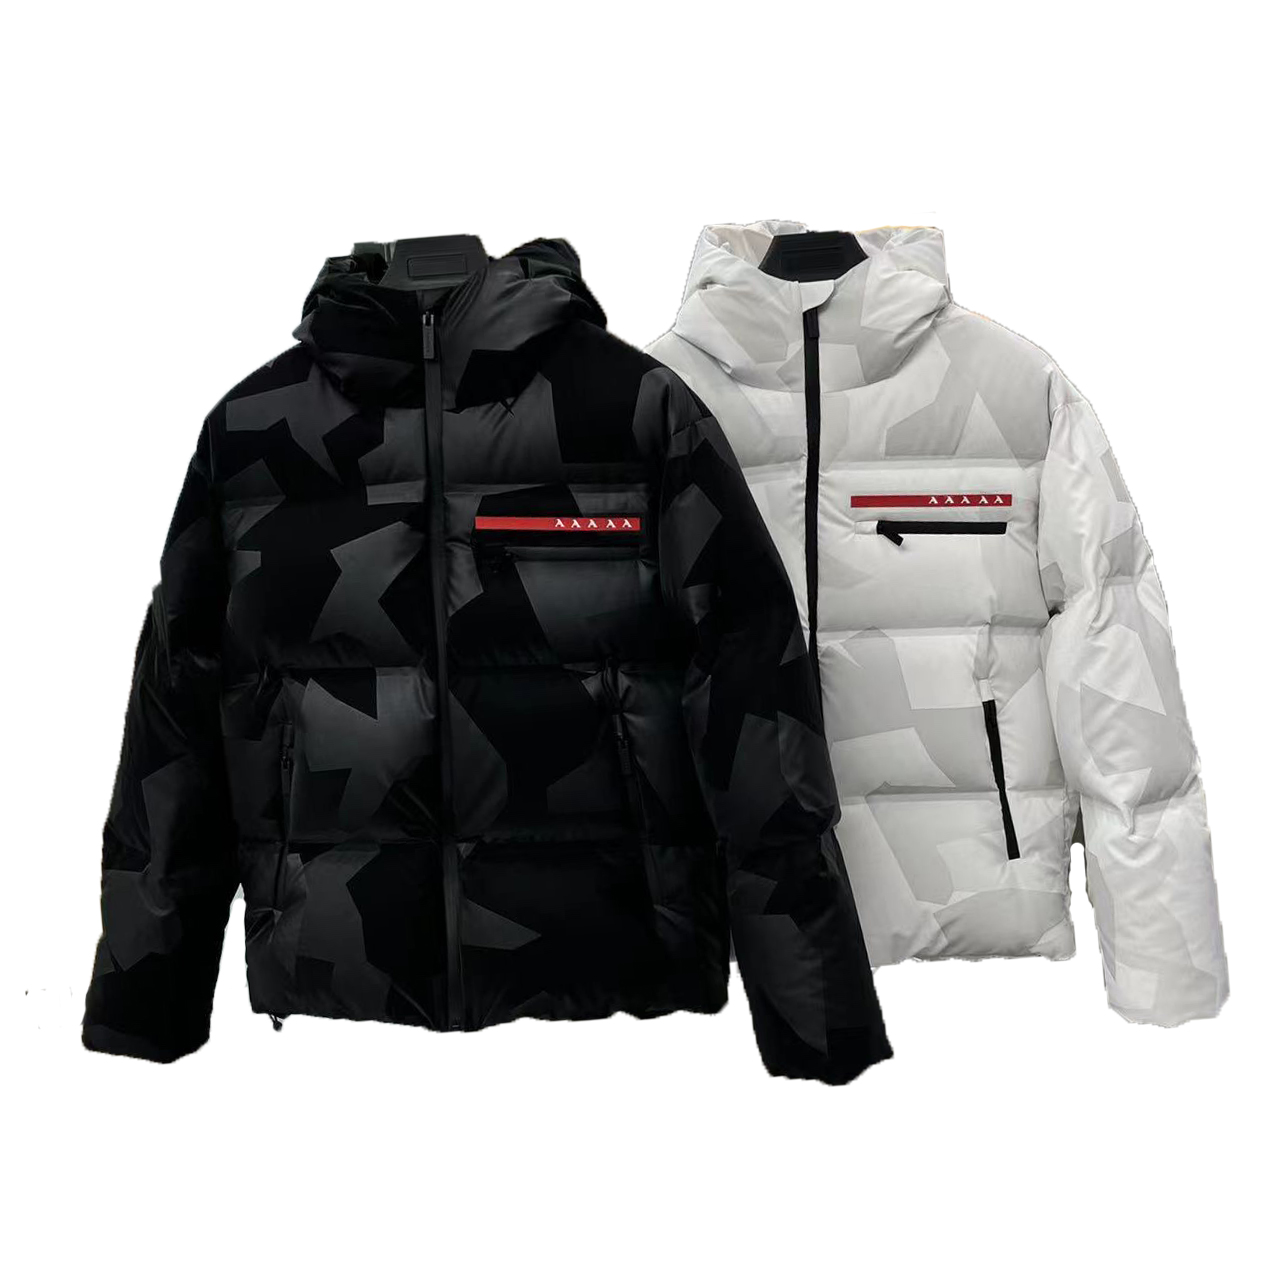 뜨거운 판매 이탈리아 유명한 남자 거위 다운 자켓 위장 노스 겨울 코트 Linea Rossa Red Label Limited 시리즈 편안하고 따뜻한 재킷 남자